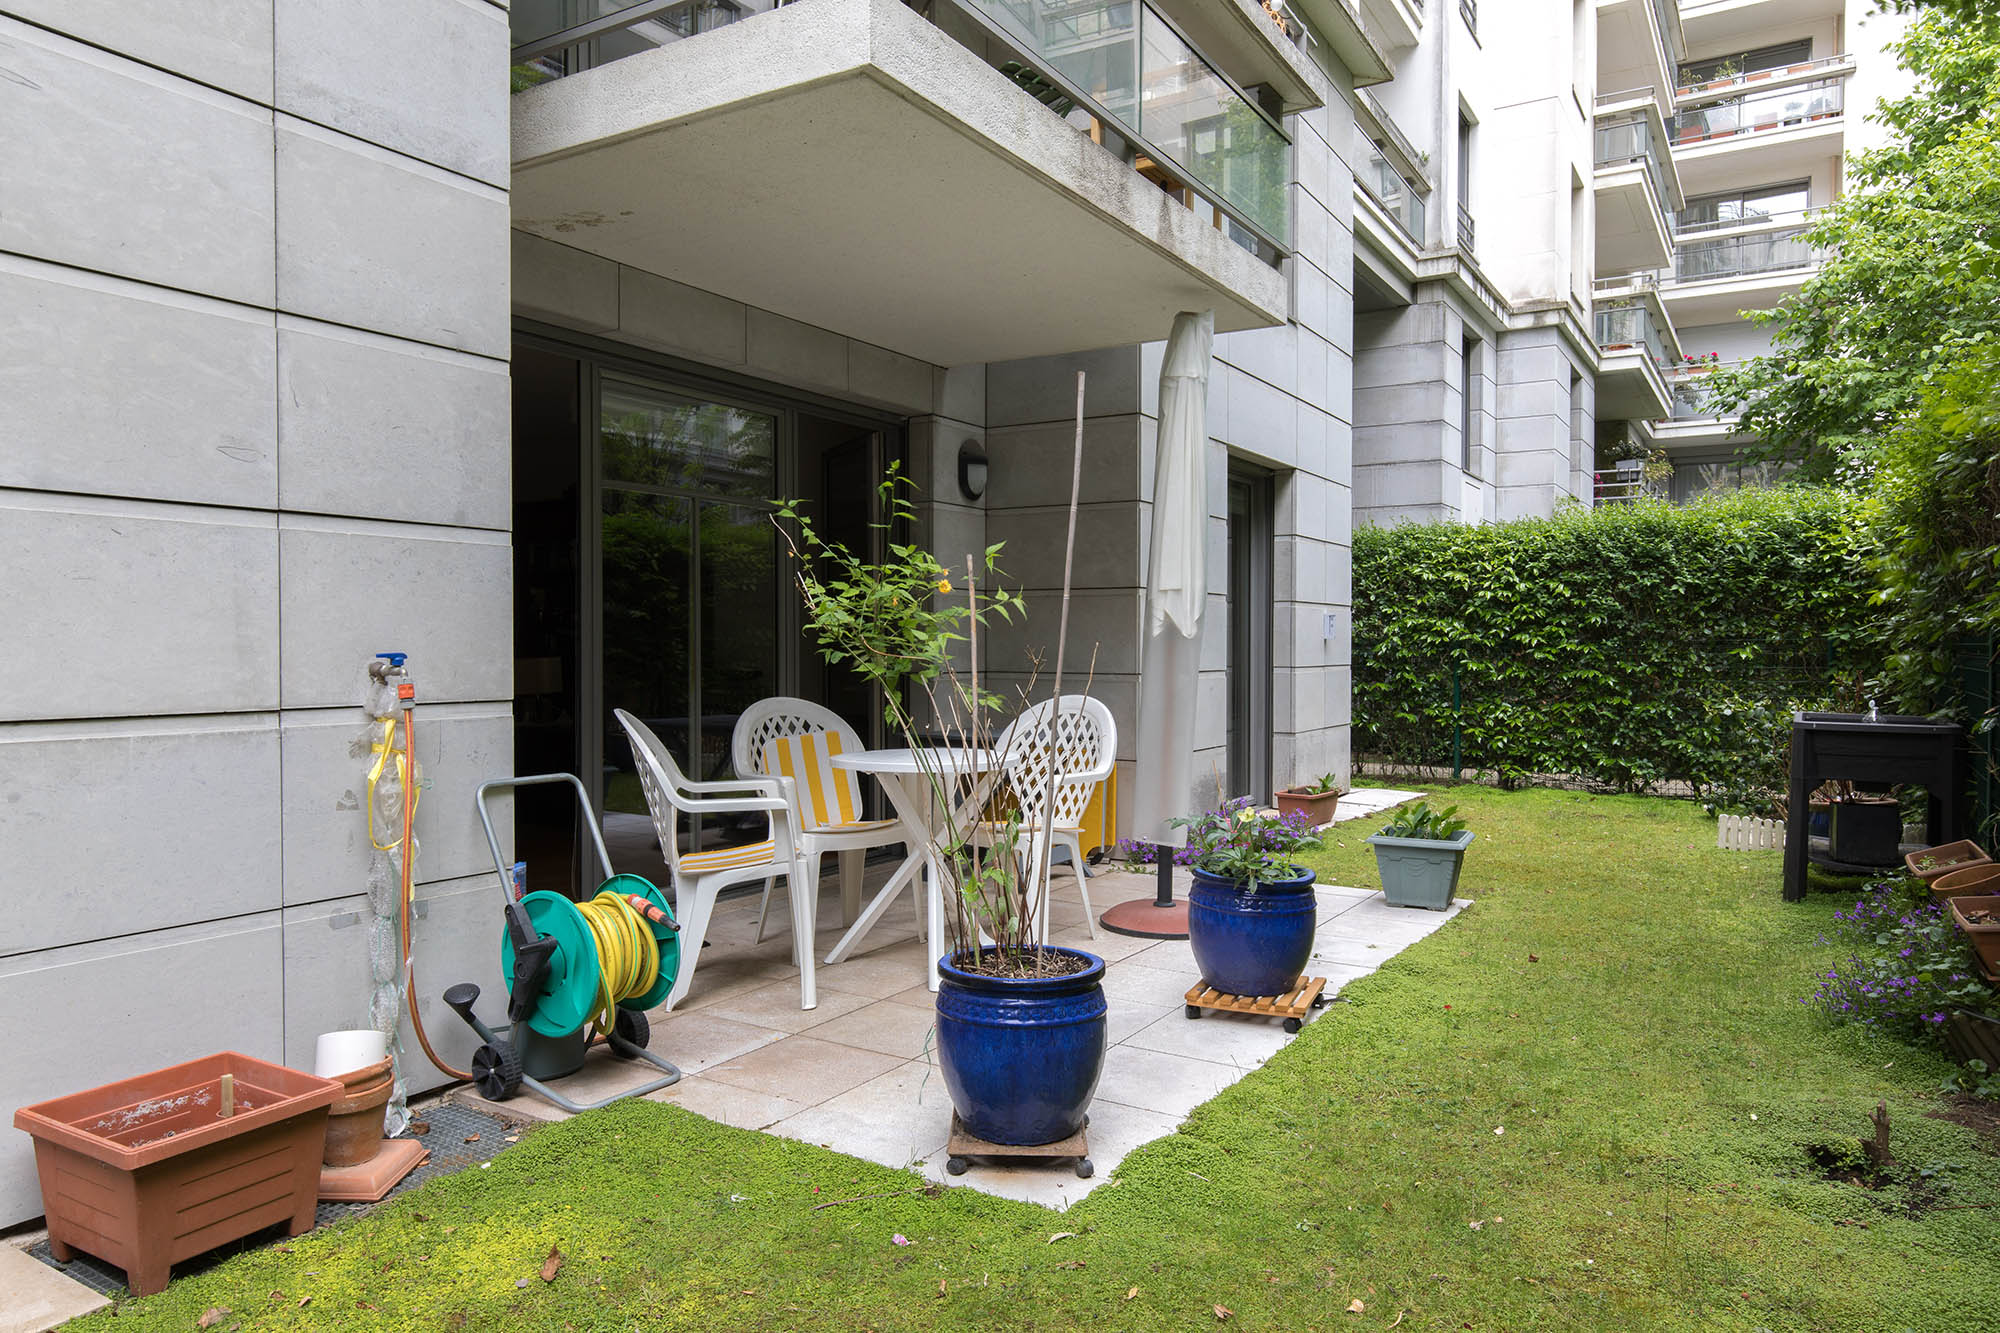 Appartement rez de jardin vente immeuble récent Javel Gabriel Riqueti 75015 Paris 15ème terrasse jardin